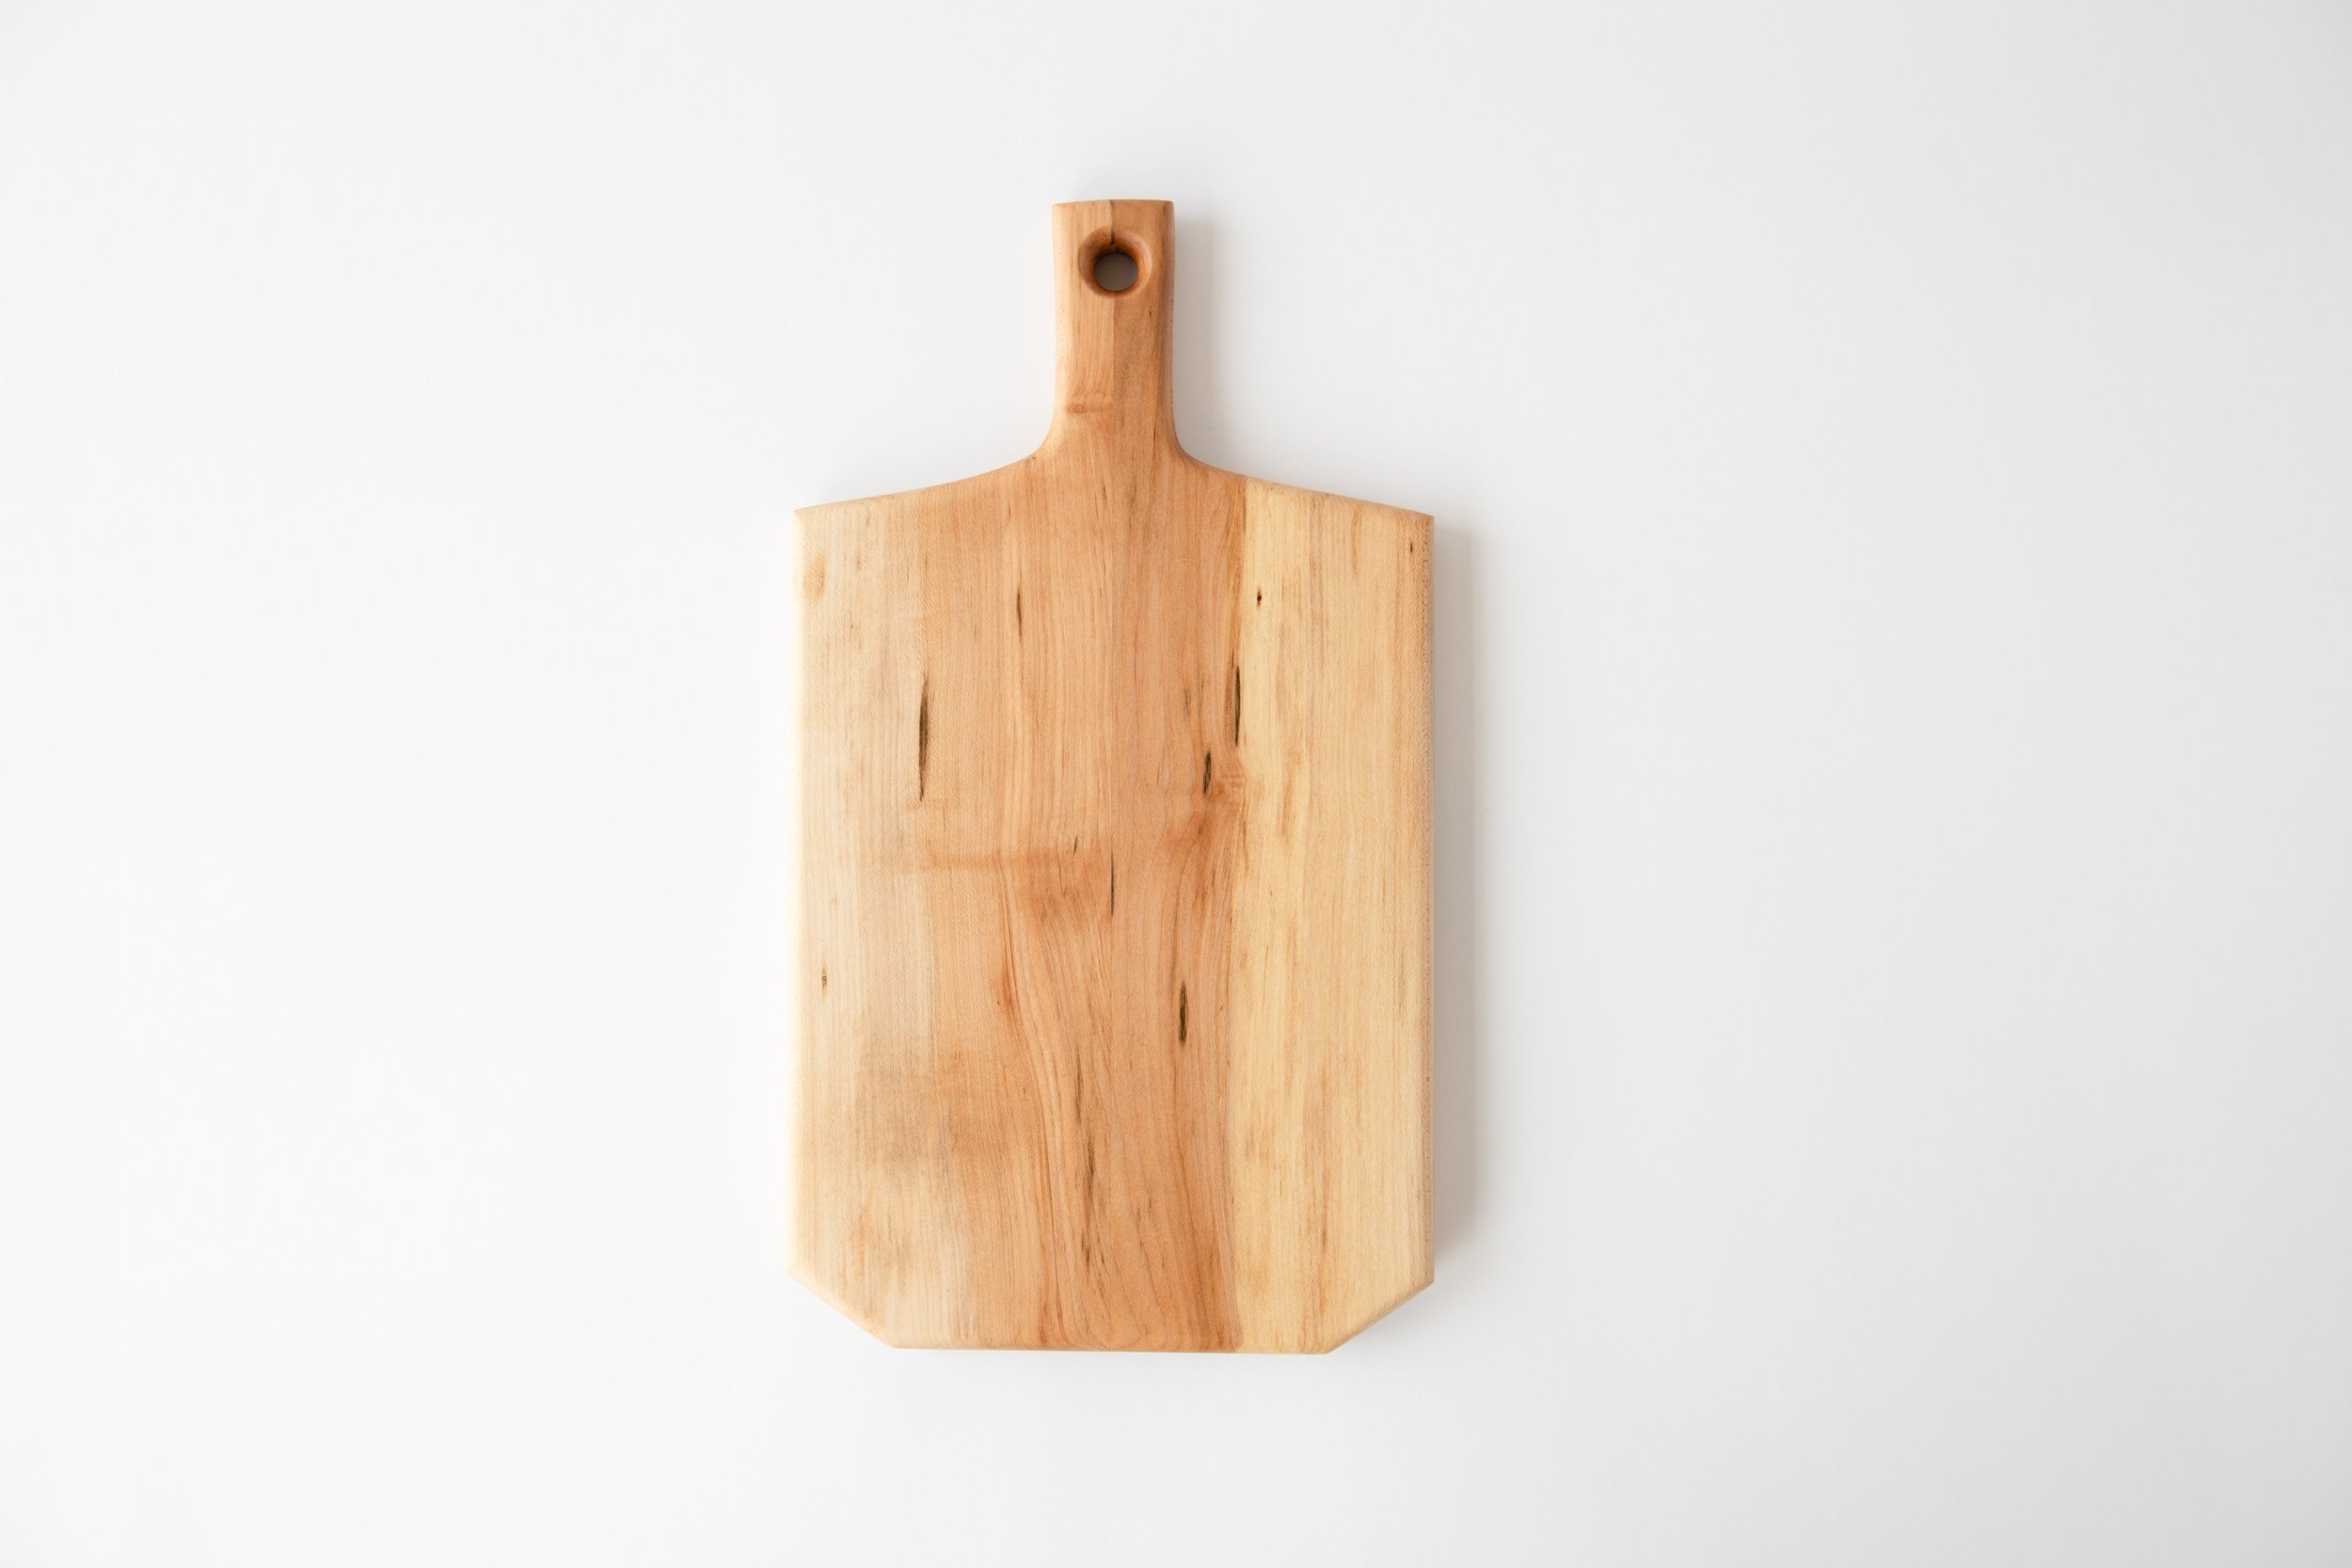 Walnut end grain cutting board — Sunhouse Craft